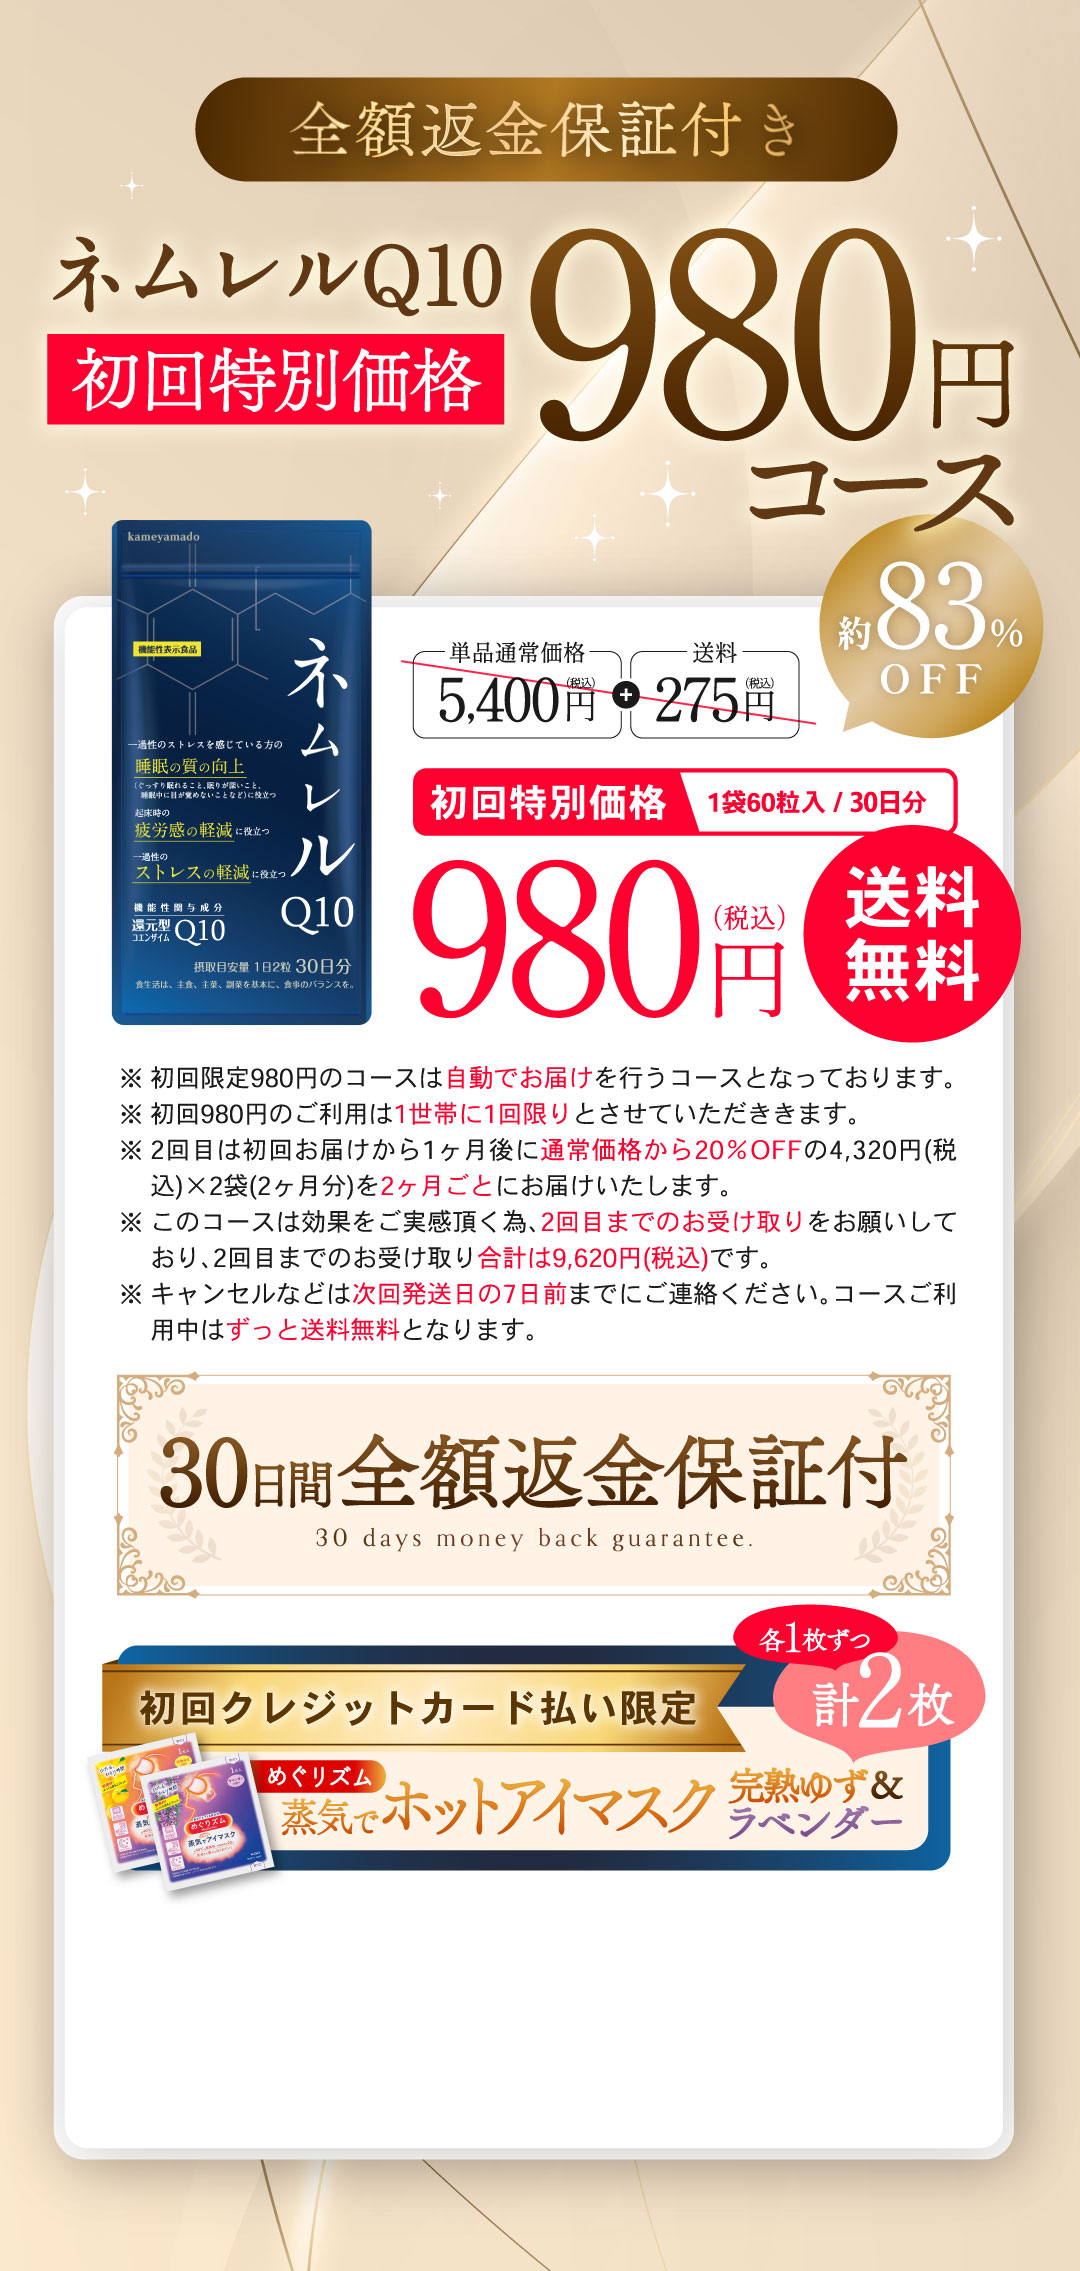 ネムレル980円キャンペーン